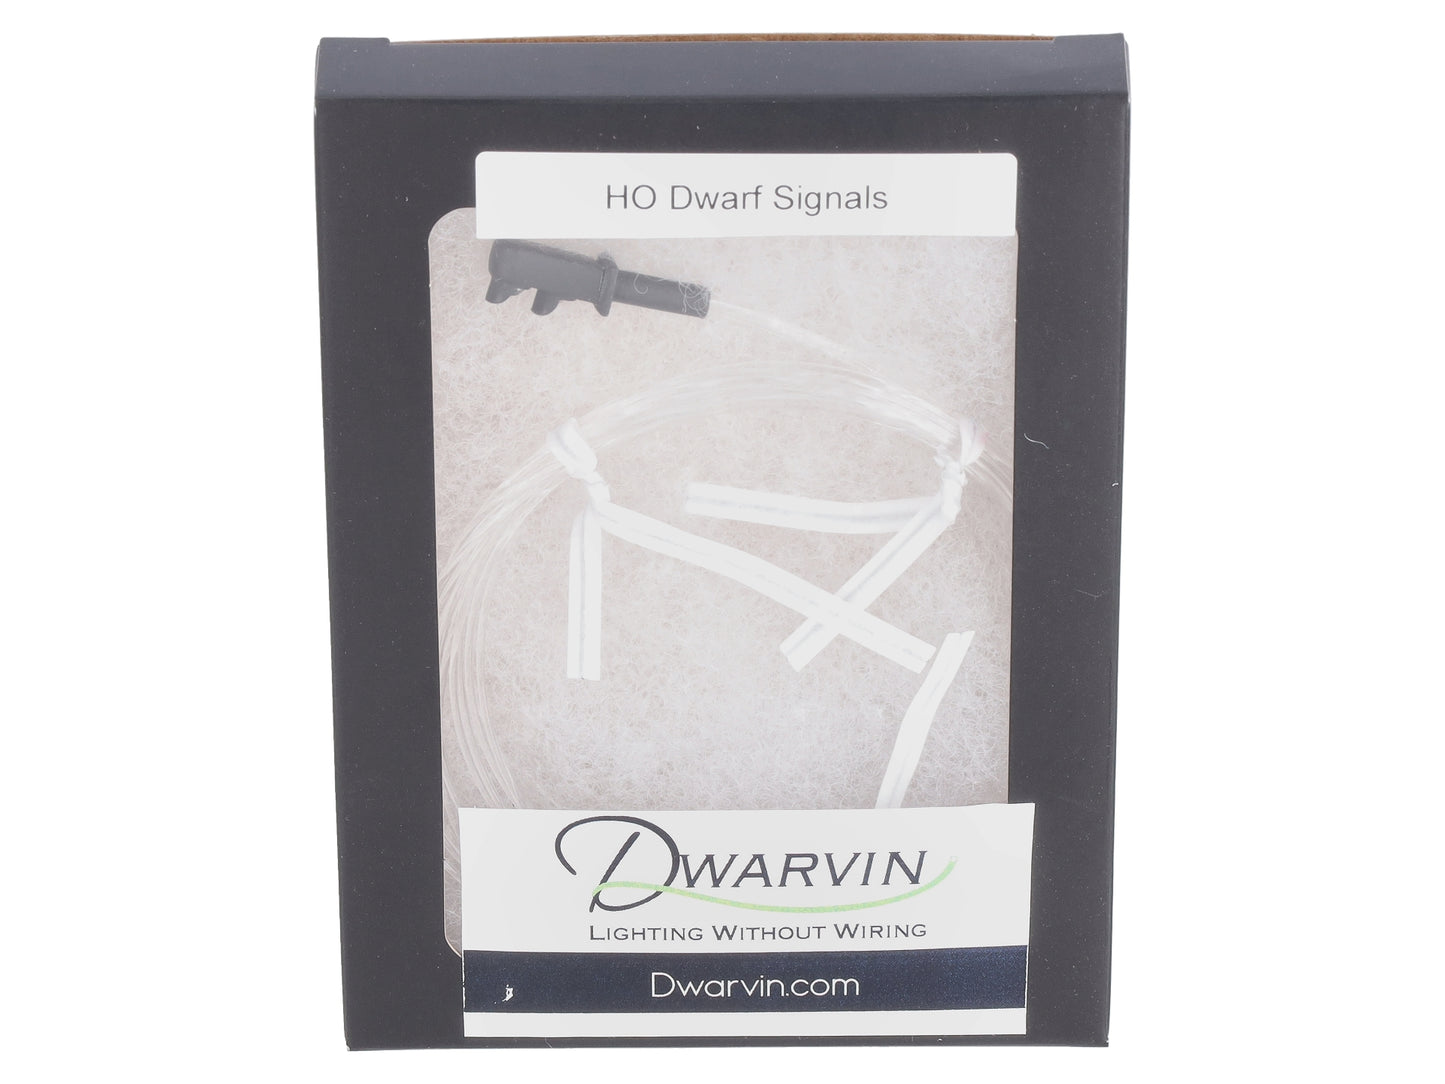 Dwarvin DVFLBS101 HO Fiber-Lit 2 Color Dwarf Signal (Single)